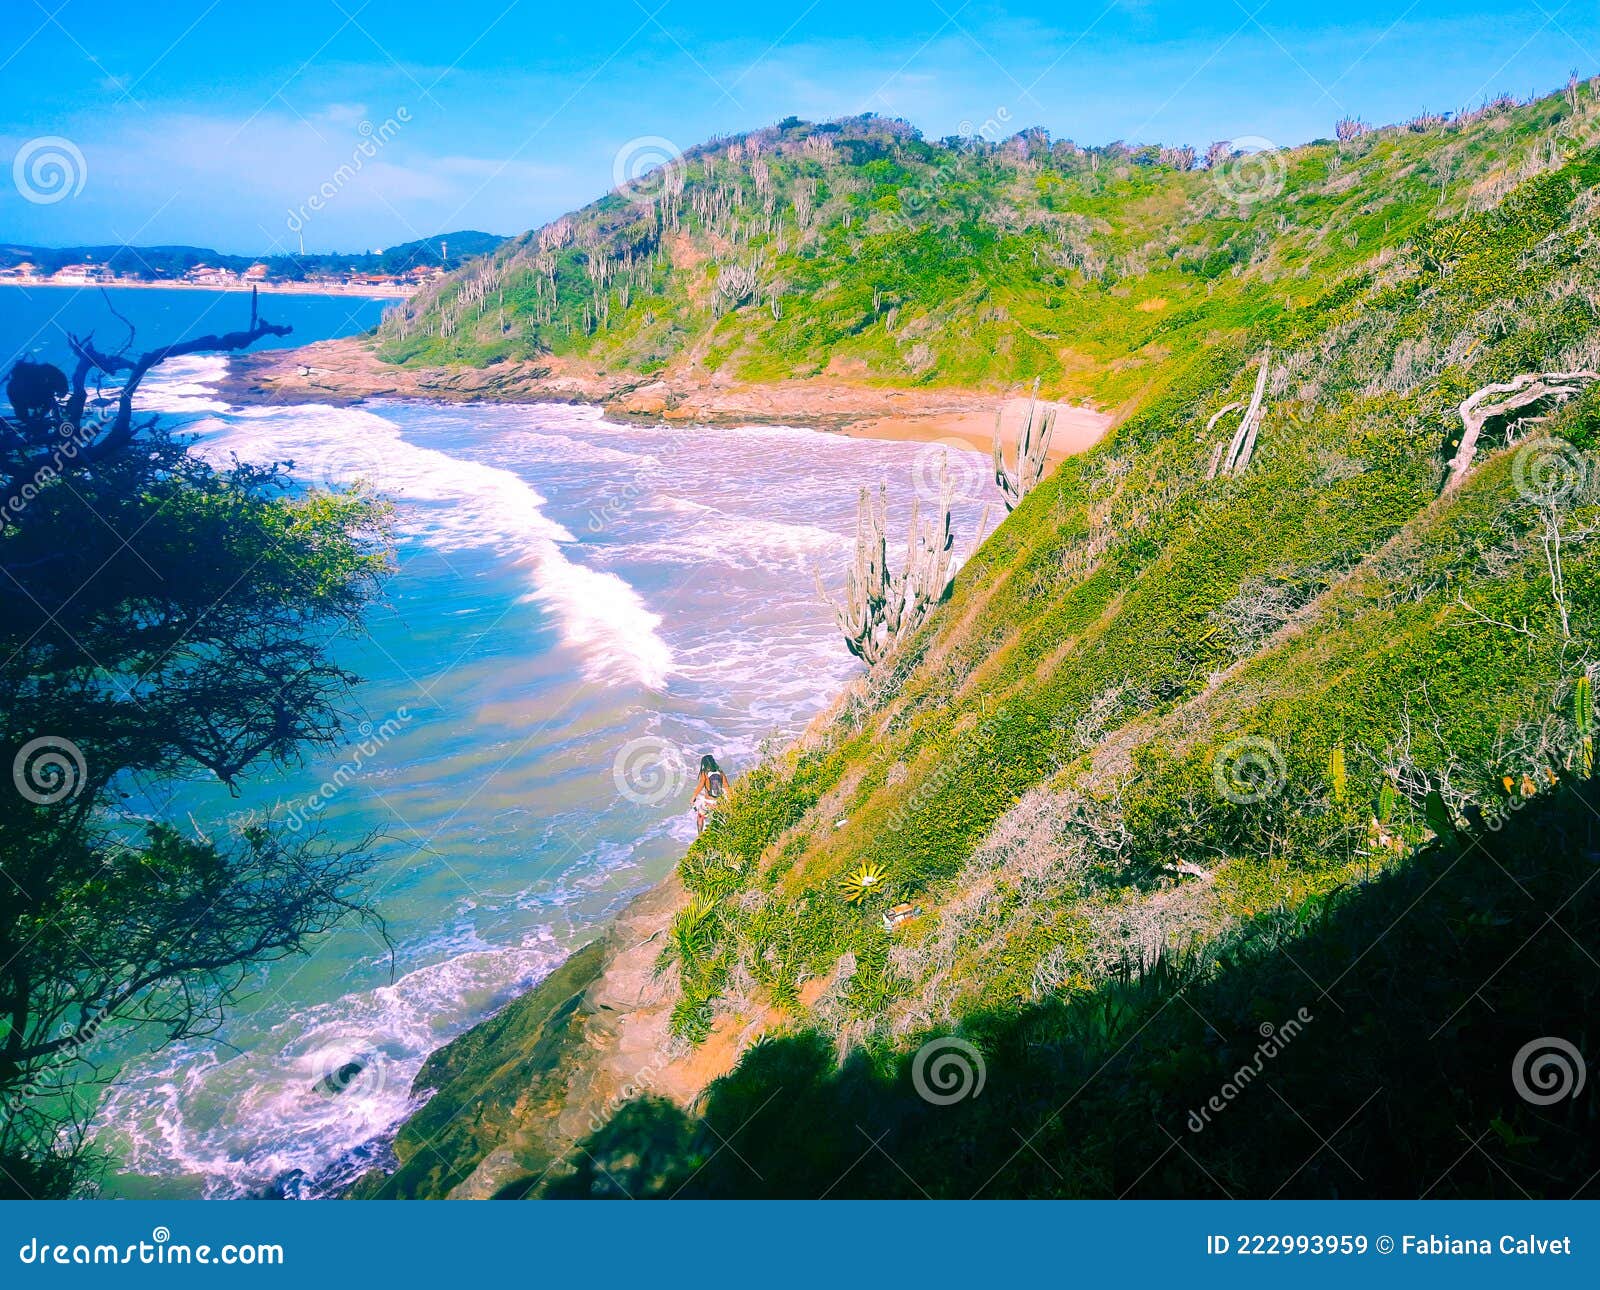 beach praia dos amores, trail, bÃÂºzios, brazil - 2021